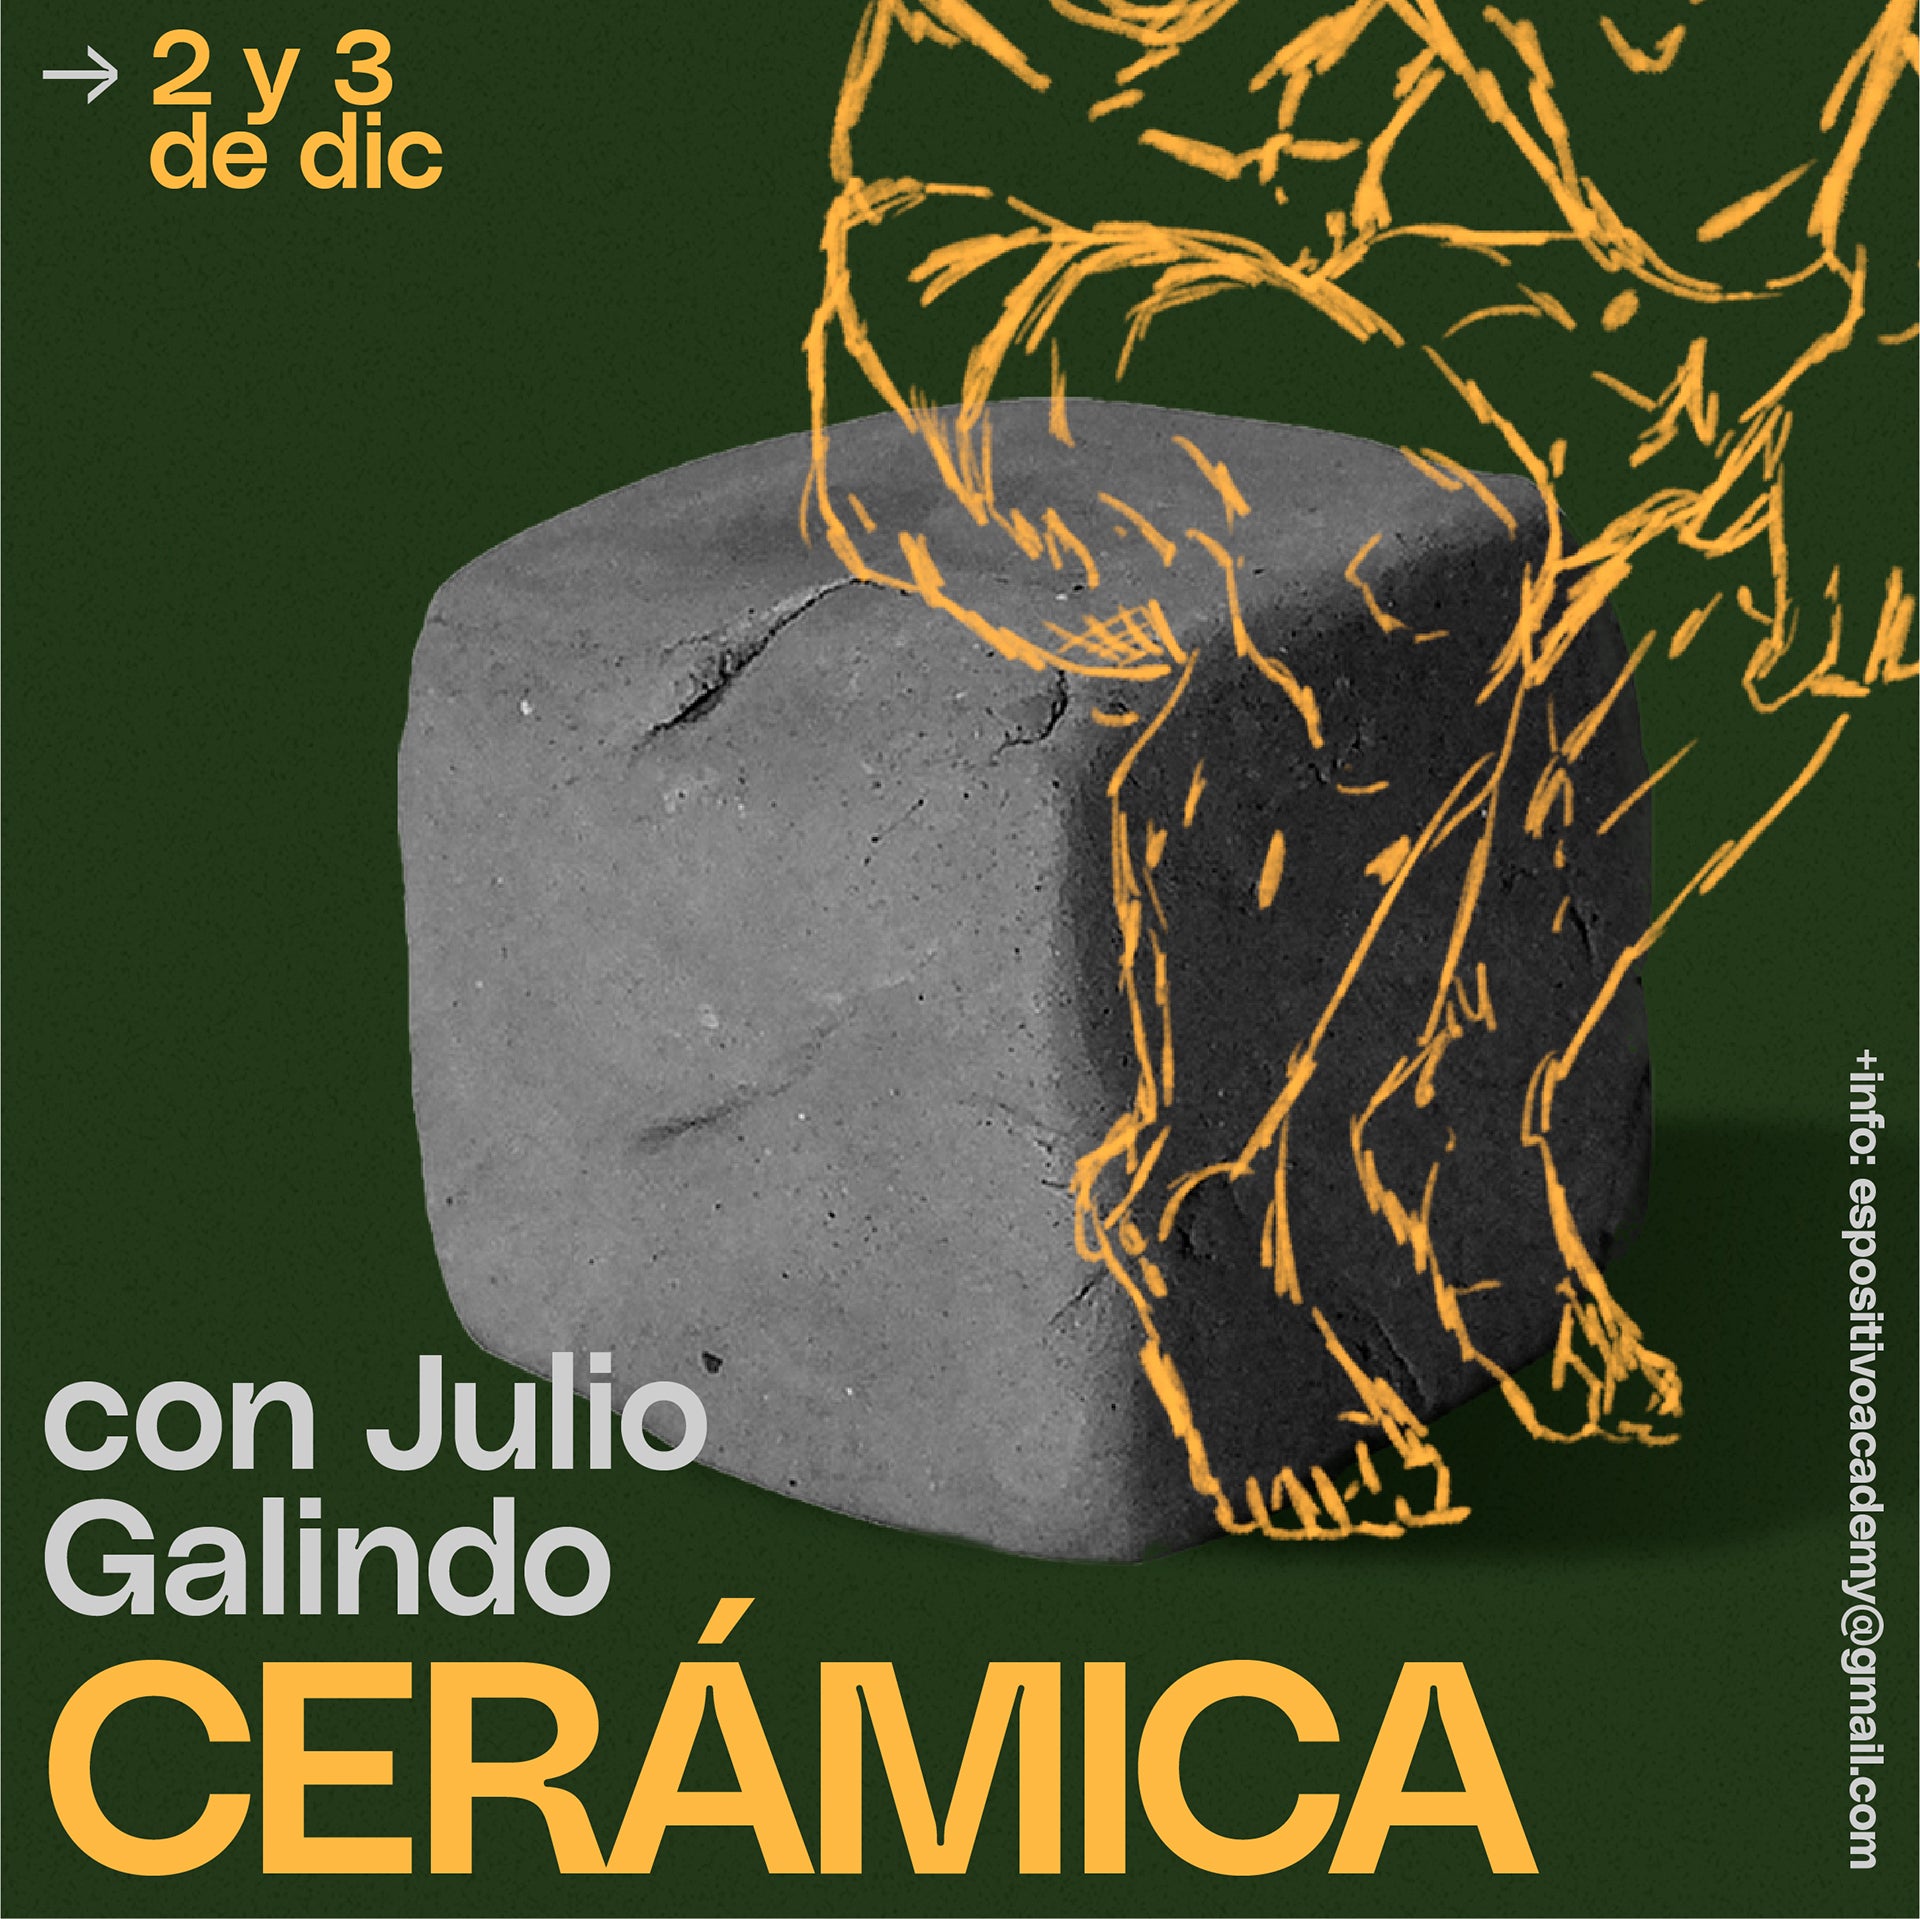 DICIEMBRE · Taller de Cerámica con Julio Galindo <br> 2 y 3 de diciembre